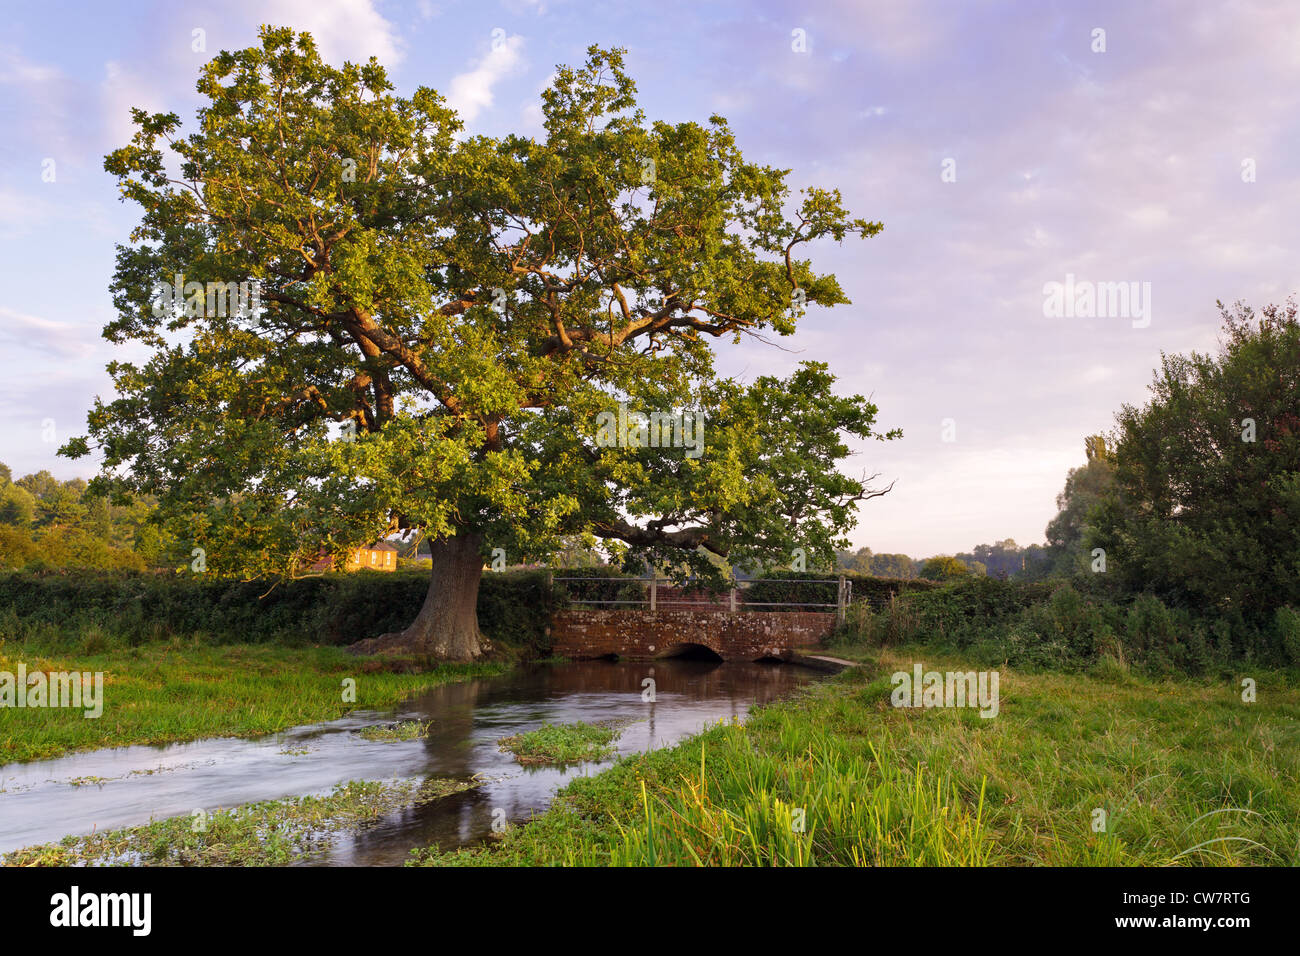 Un vieux chêne en plus d'un pont sur un affluent de la rivière Arle dans le Hampshire, prises au lever du soleil. Banque D'Images